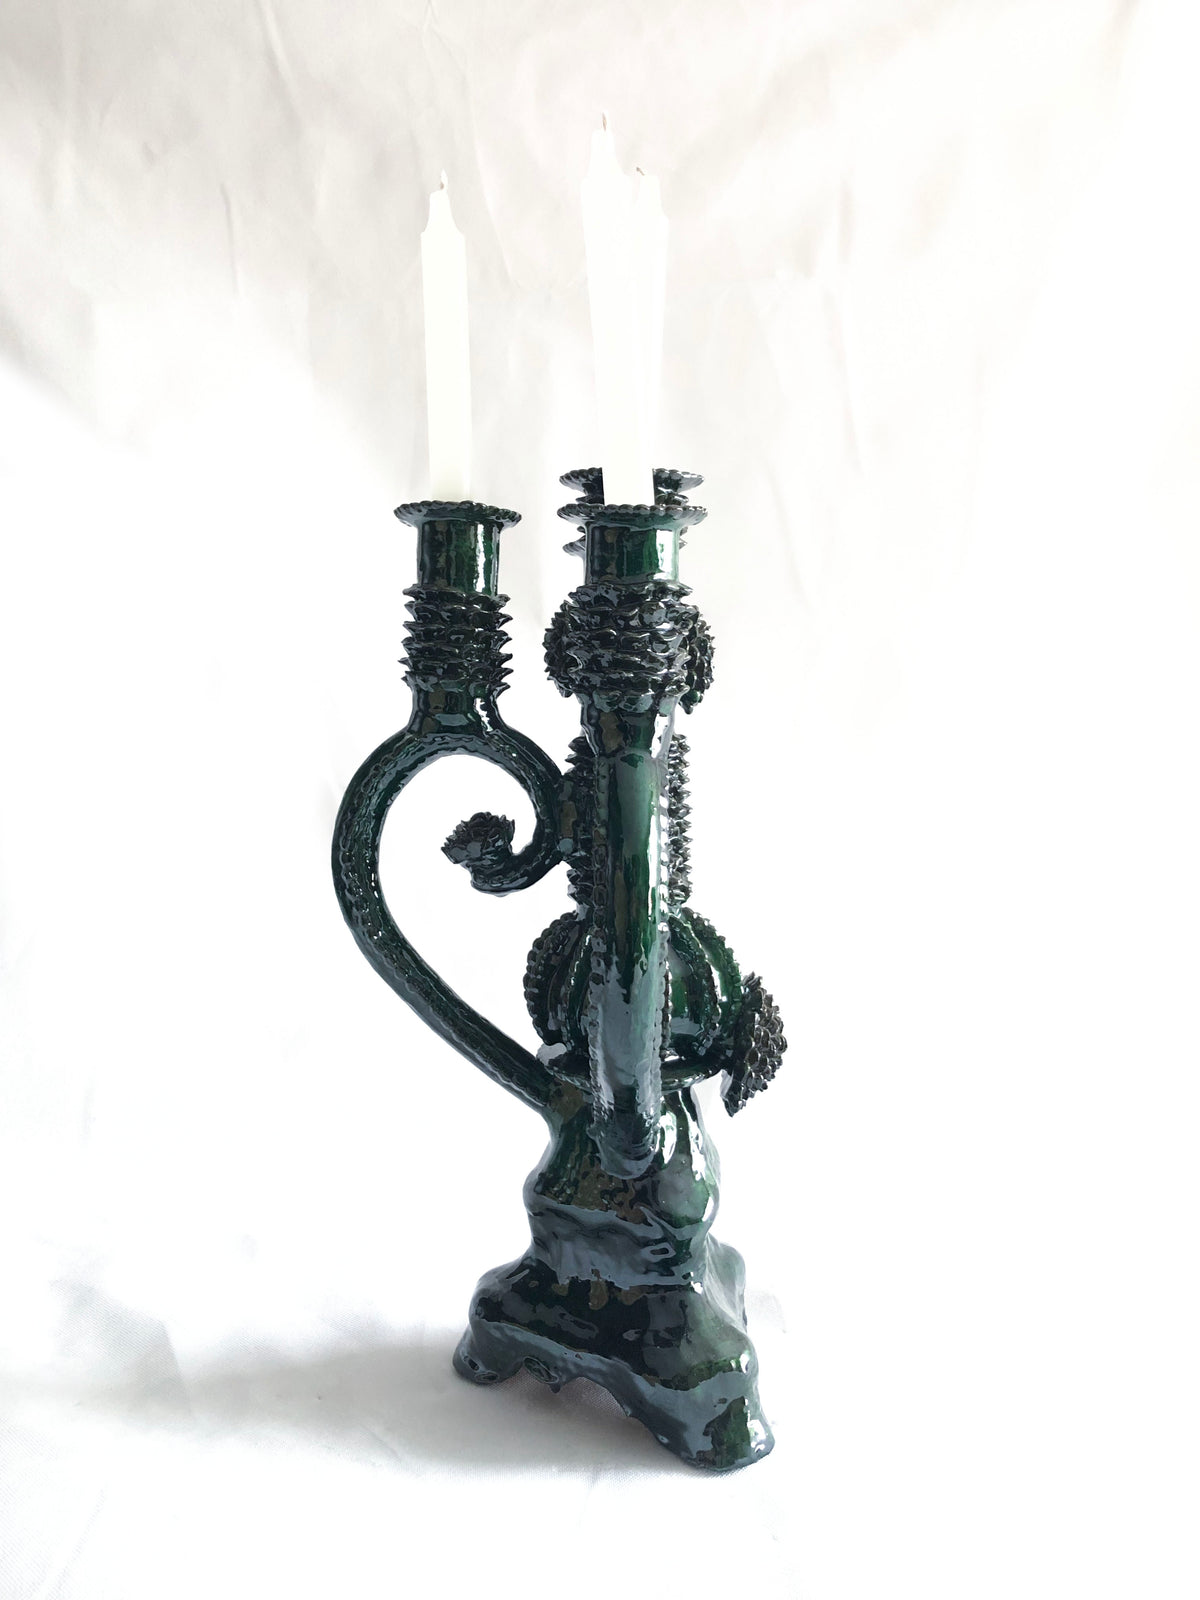 Candelero verde de 4 velas - Barro vidriado - 45 cm. 18 in.